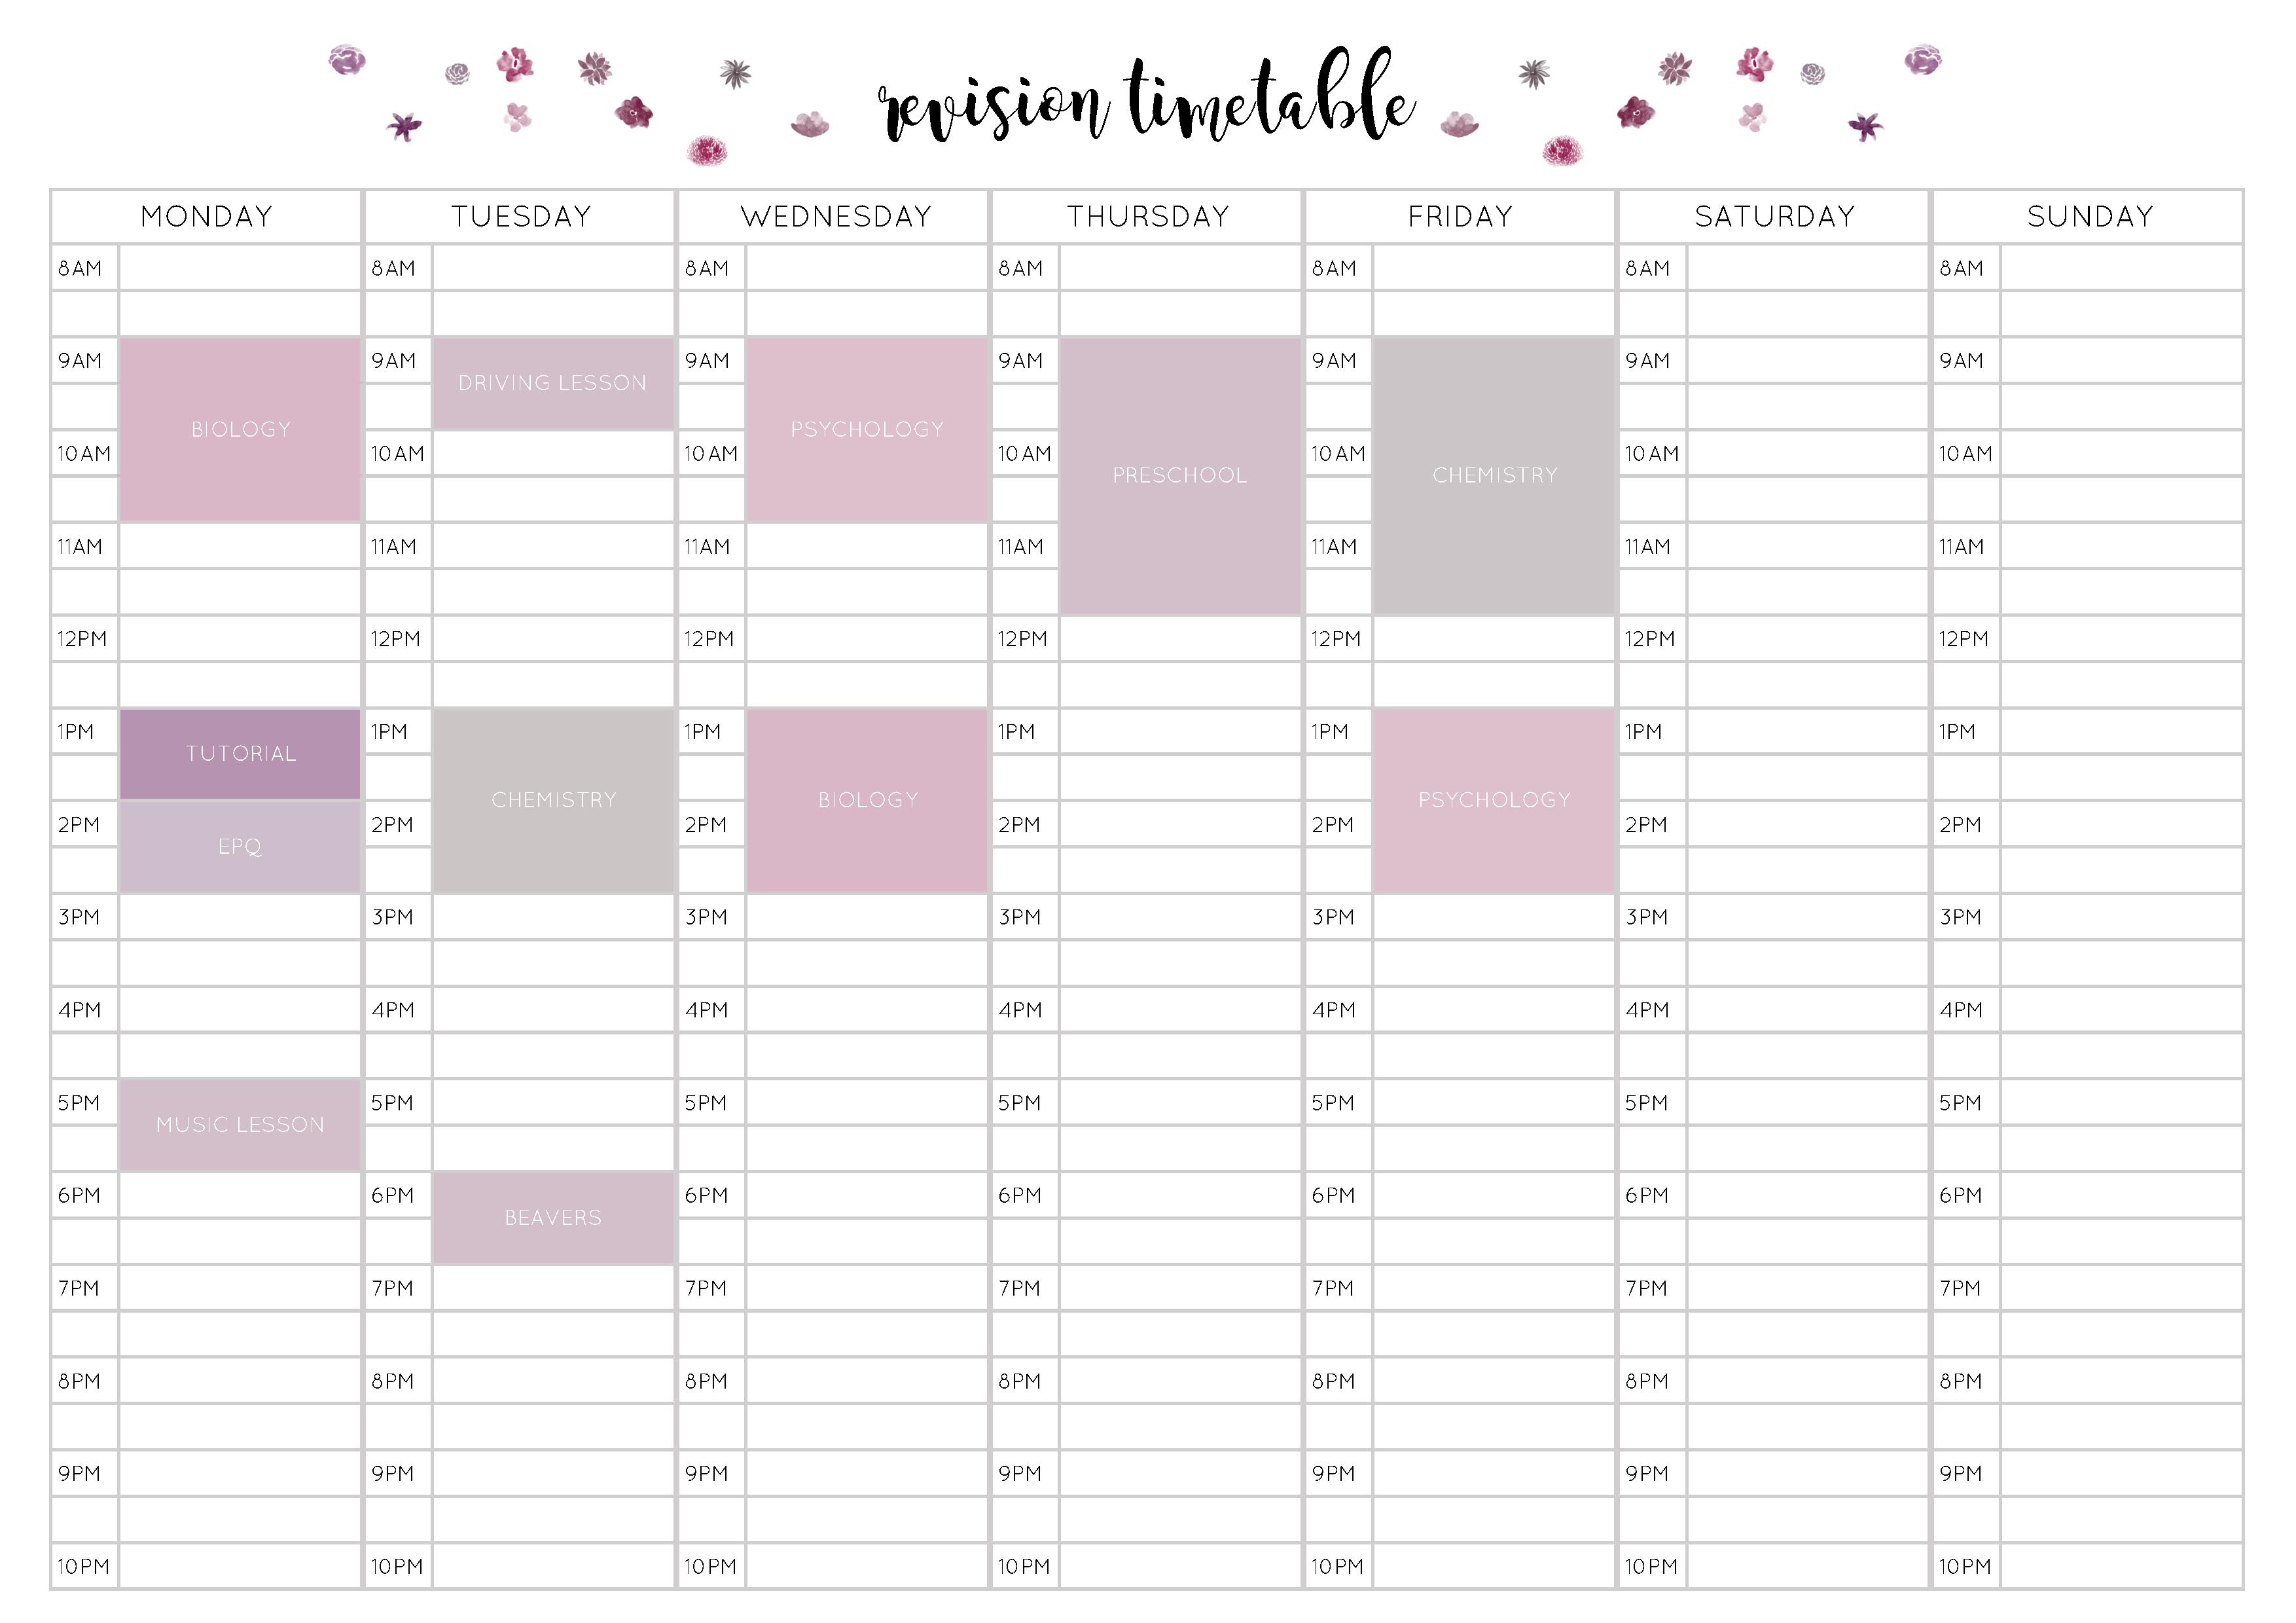 Free Revision Timetable Printable – Emily Studies